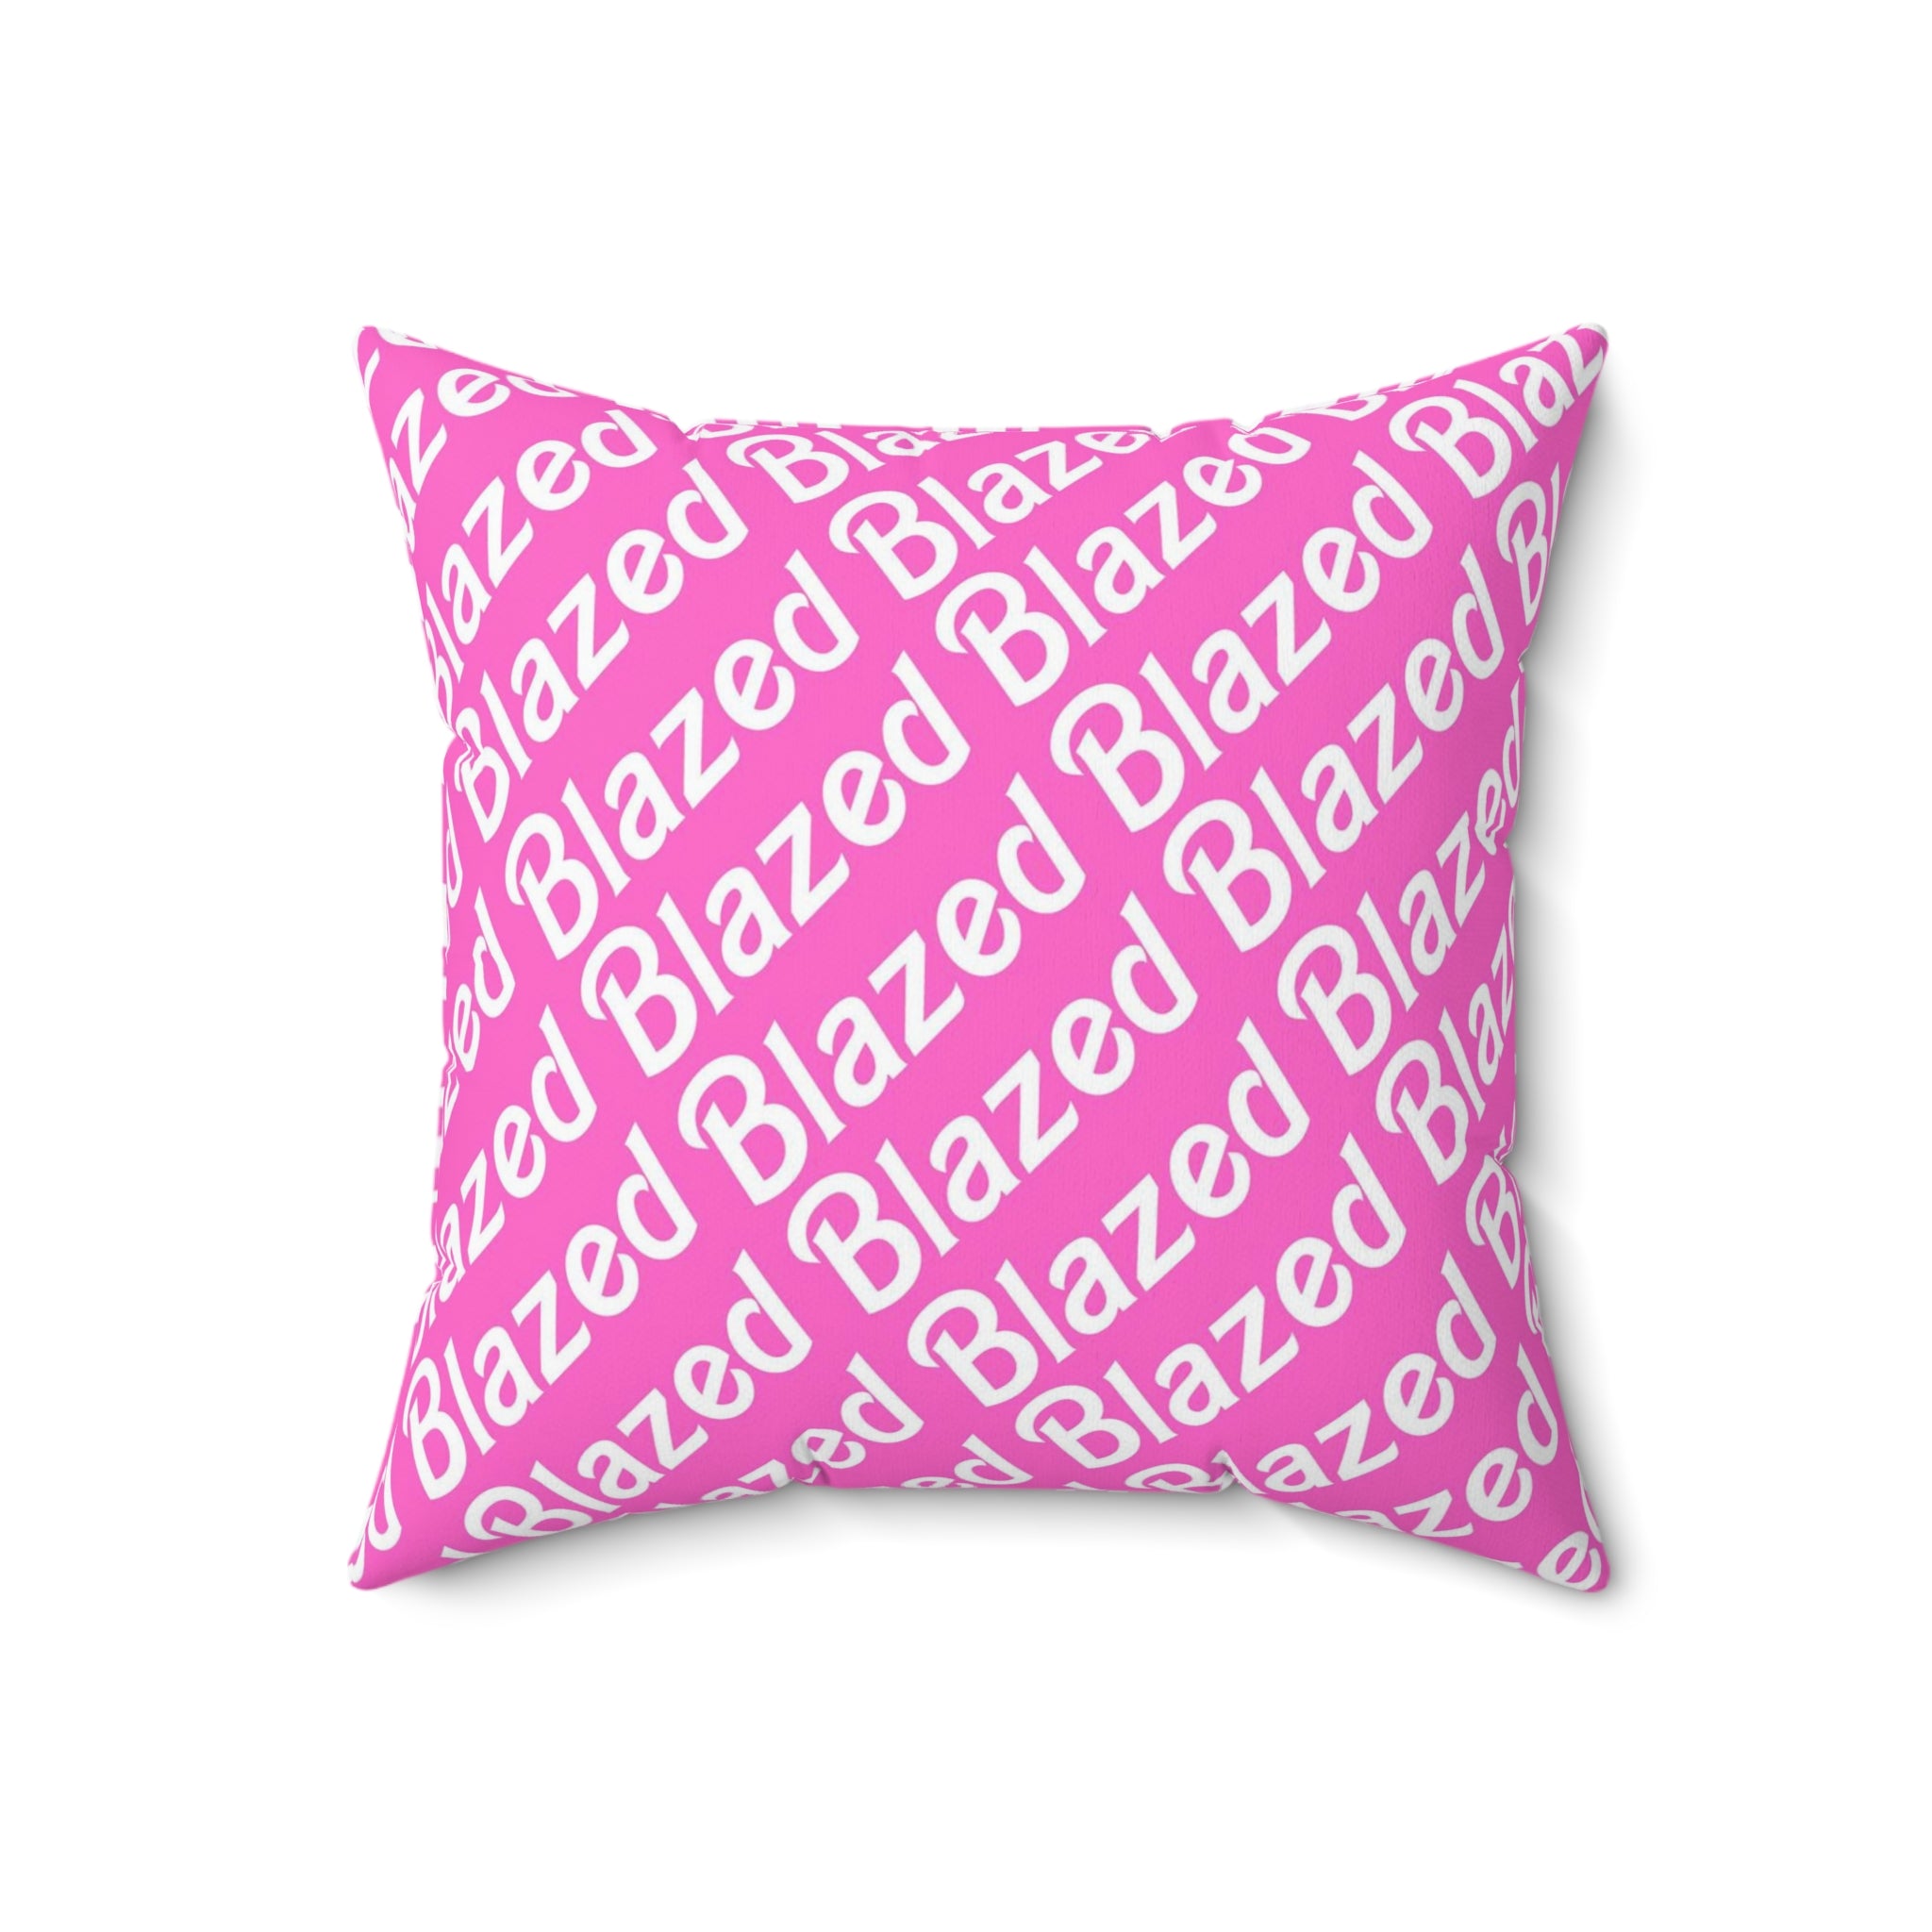 Blazed Throw Pillow